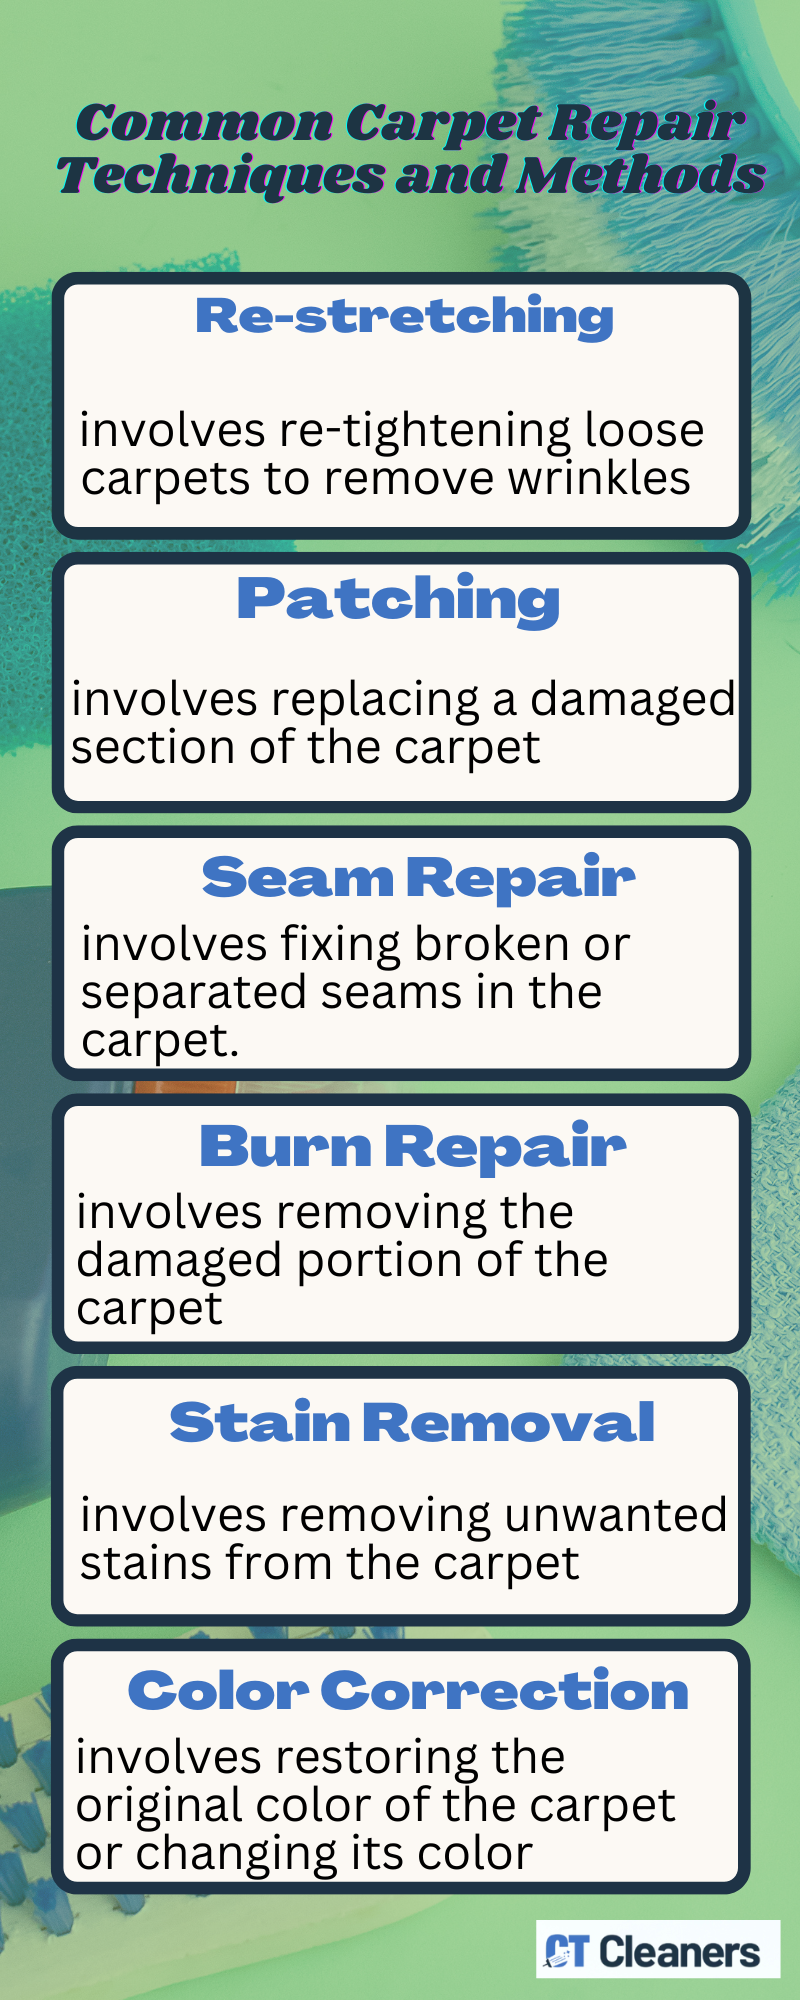 Common Carpet Repair Techniques and Methods